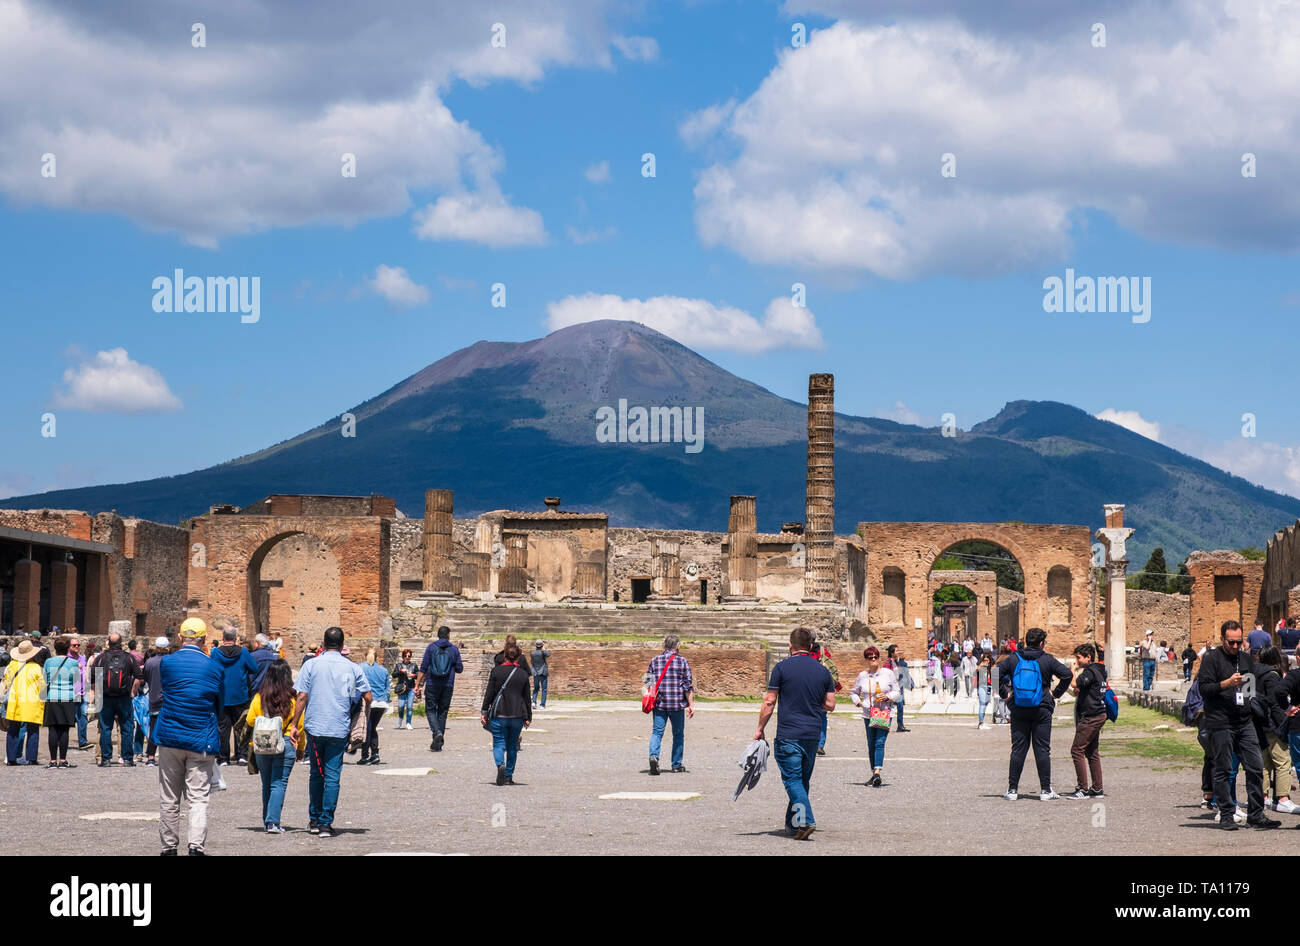 Les touristes dans le forum de la ville romaine de Pompéi, près de Naples dans la région Campanie en Italie, détruit par l'éruption volcanique du Vésuve. Banque D'Images